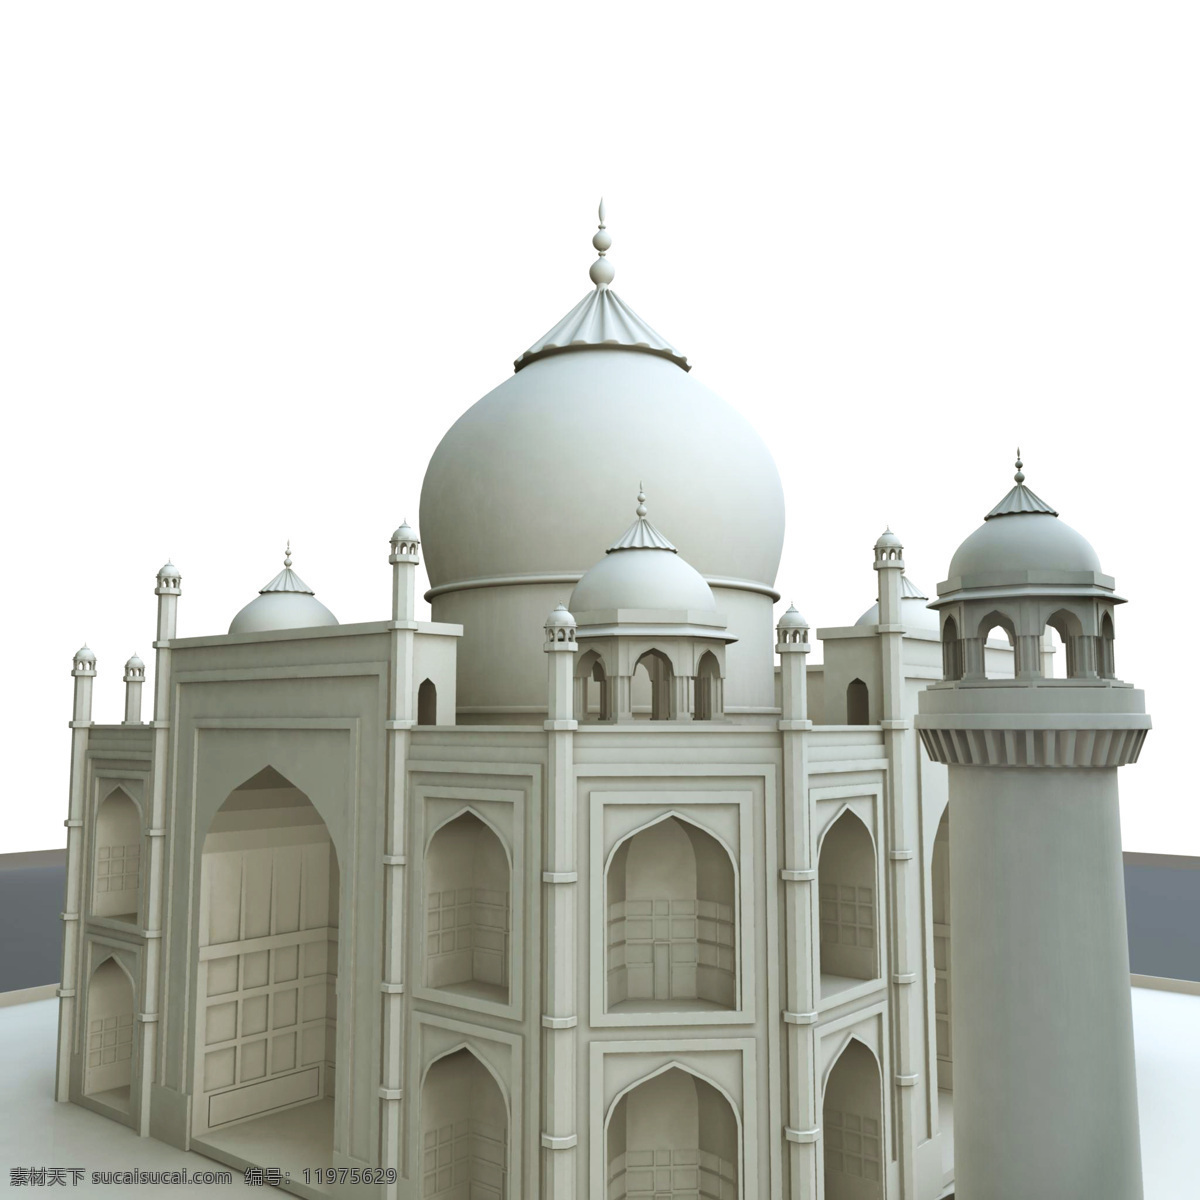 漂亮 精美 欧洲 建筑 宫殿 古建筑 寺庙 3d模型素材 建筑模型